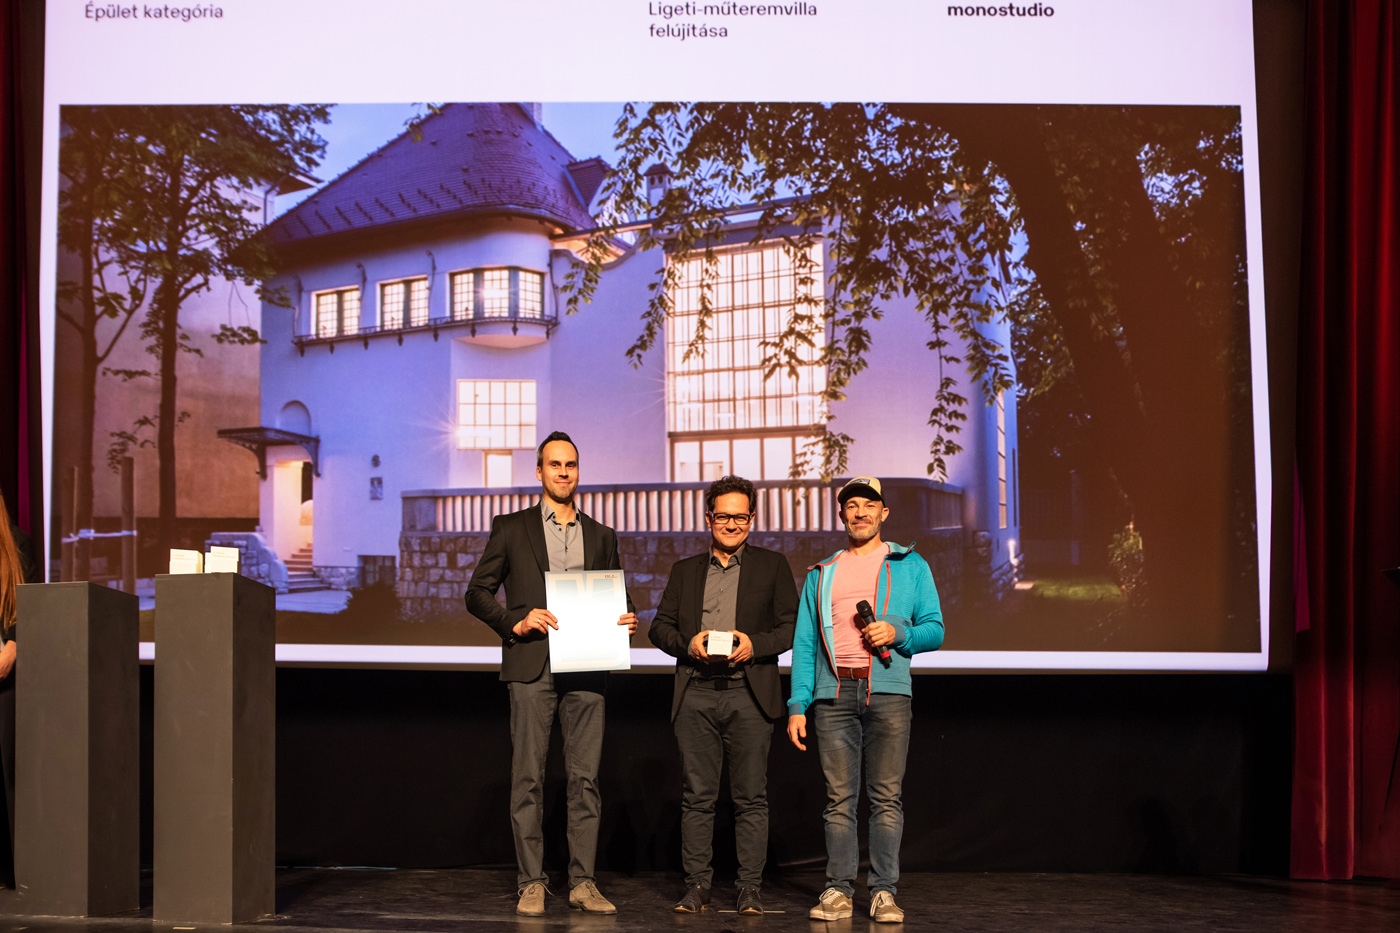 Közönségdíj Épület kategória: monostudio – Média Építészeti Díja 2021 – fotó: Gulyás Attila